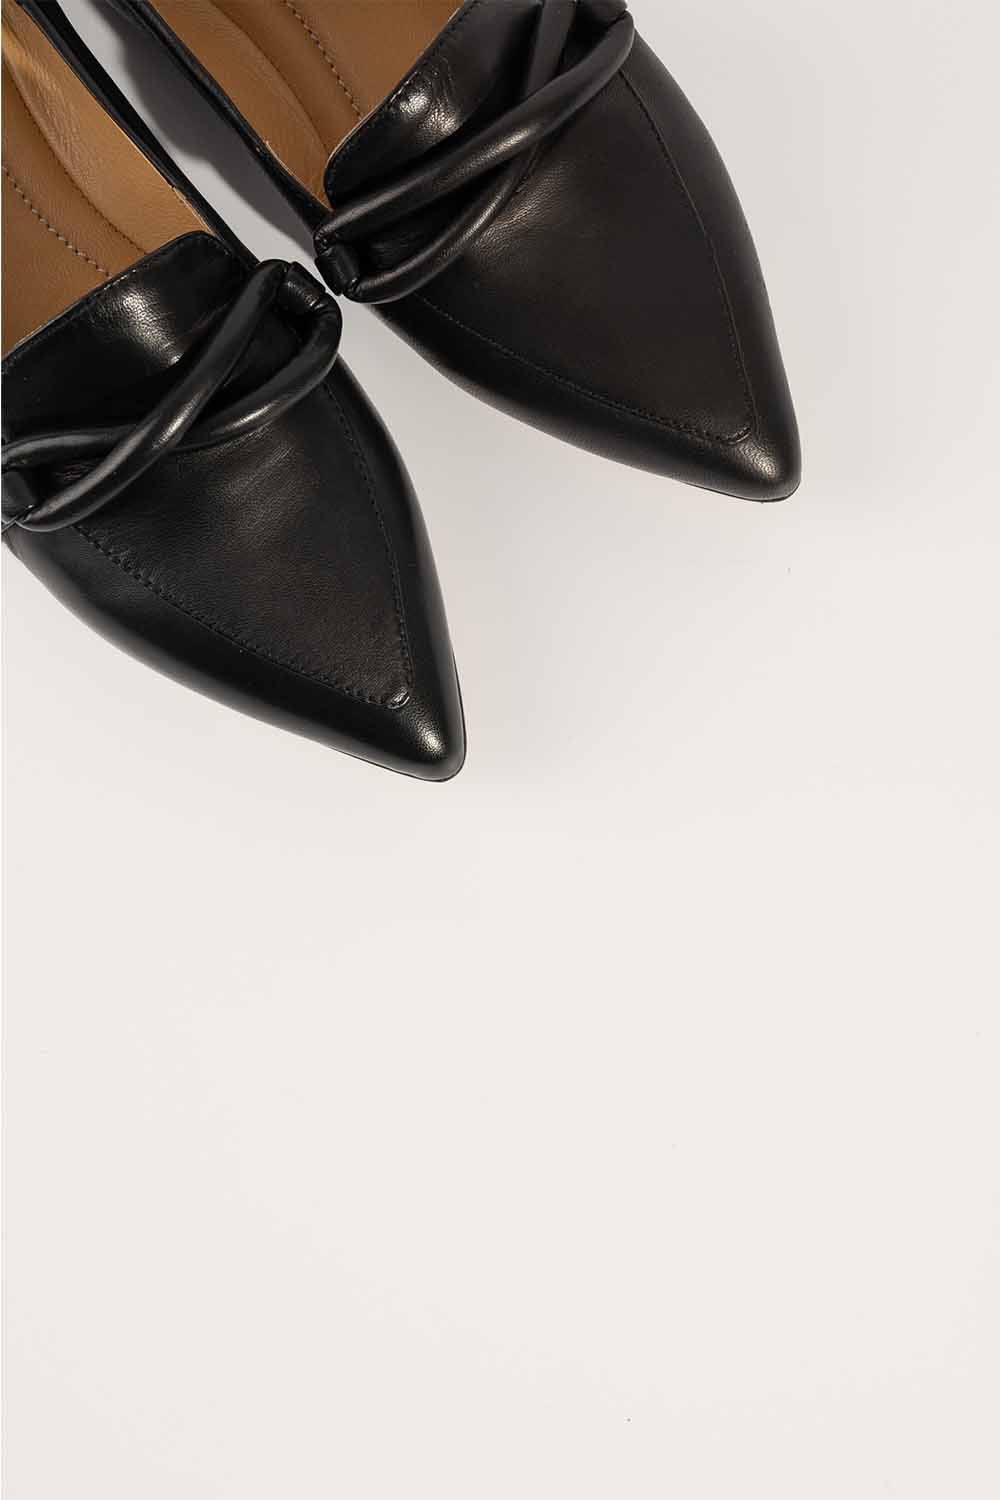 Loafer Grace 620 | Black Leather